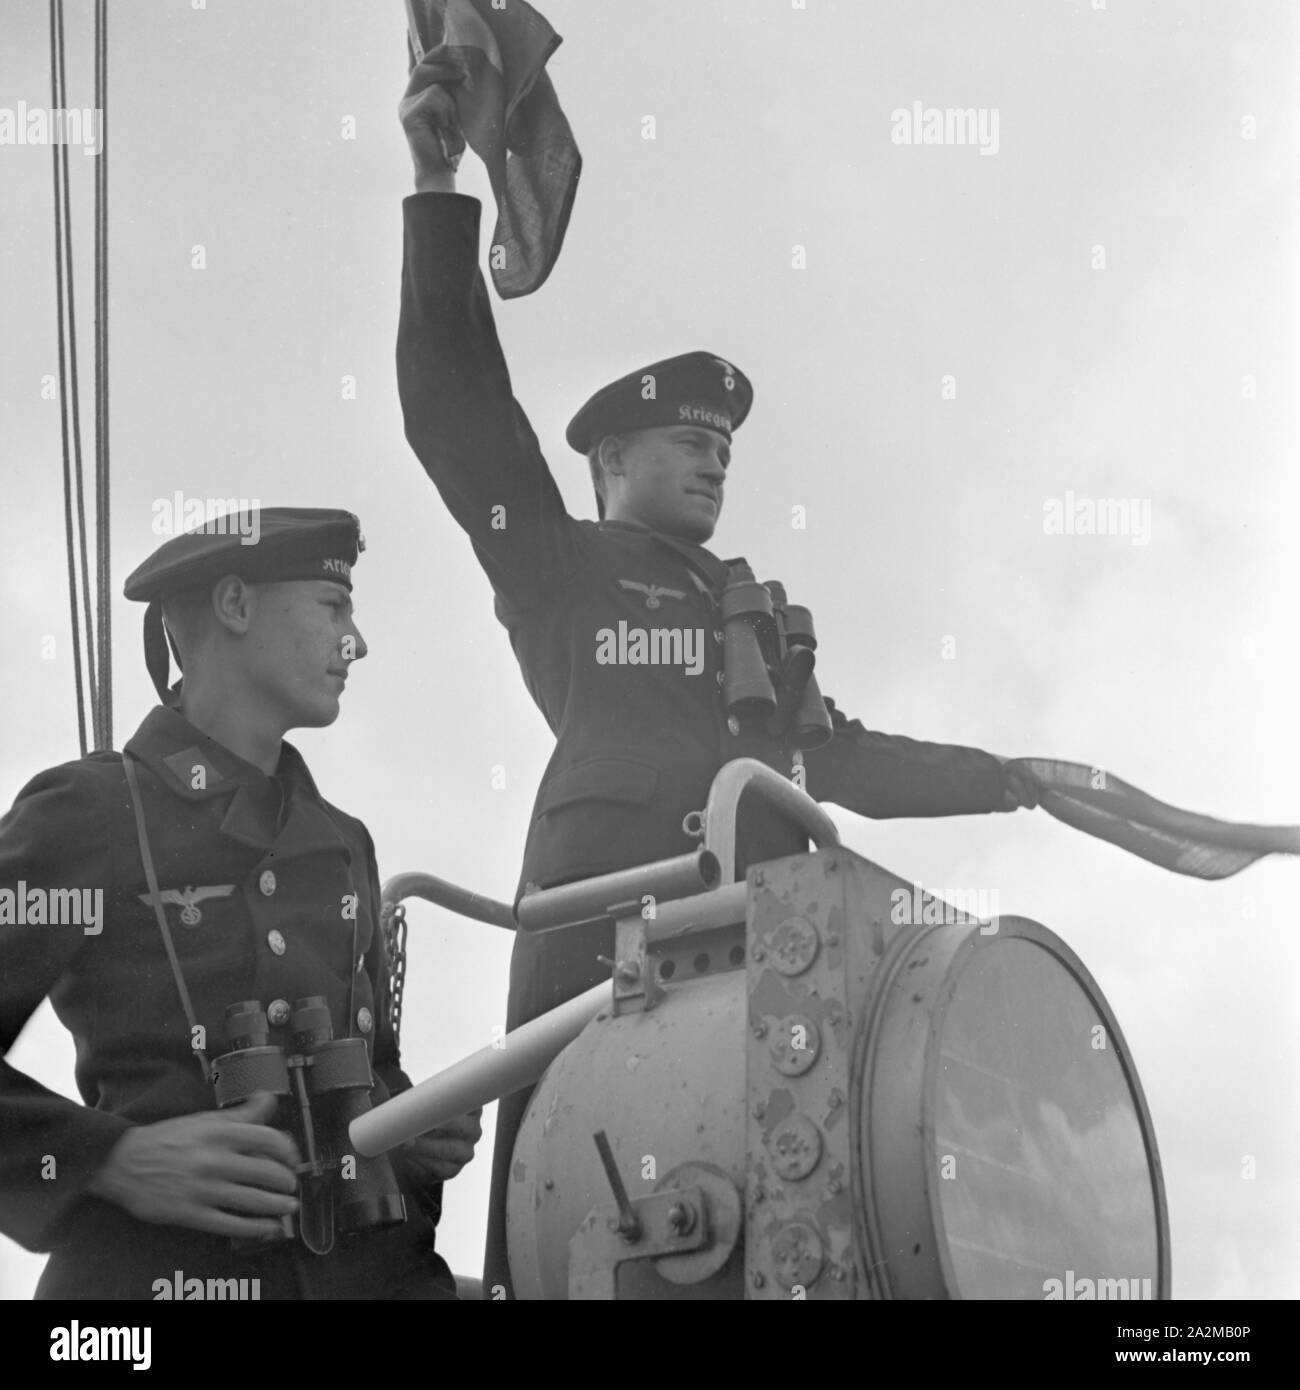 Original-Bildunterschrift: Dienst des Matrosen: Signalwinken ein Bord eines Torpedoboots, Deutschland 1940er Jahre. Flagge Semaphore auf Deck eines Torpedoboot, Deutschland 1940. Stockfoto